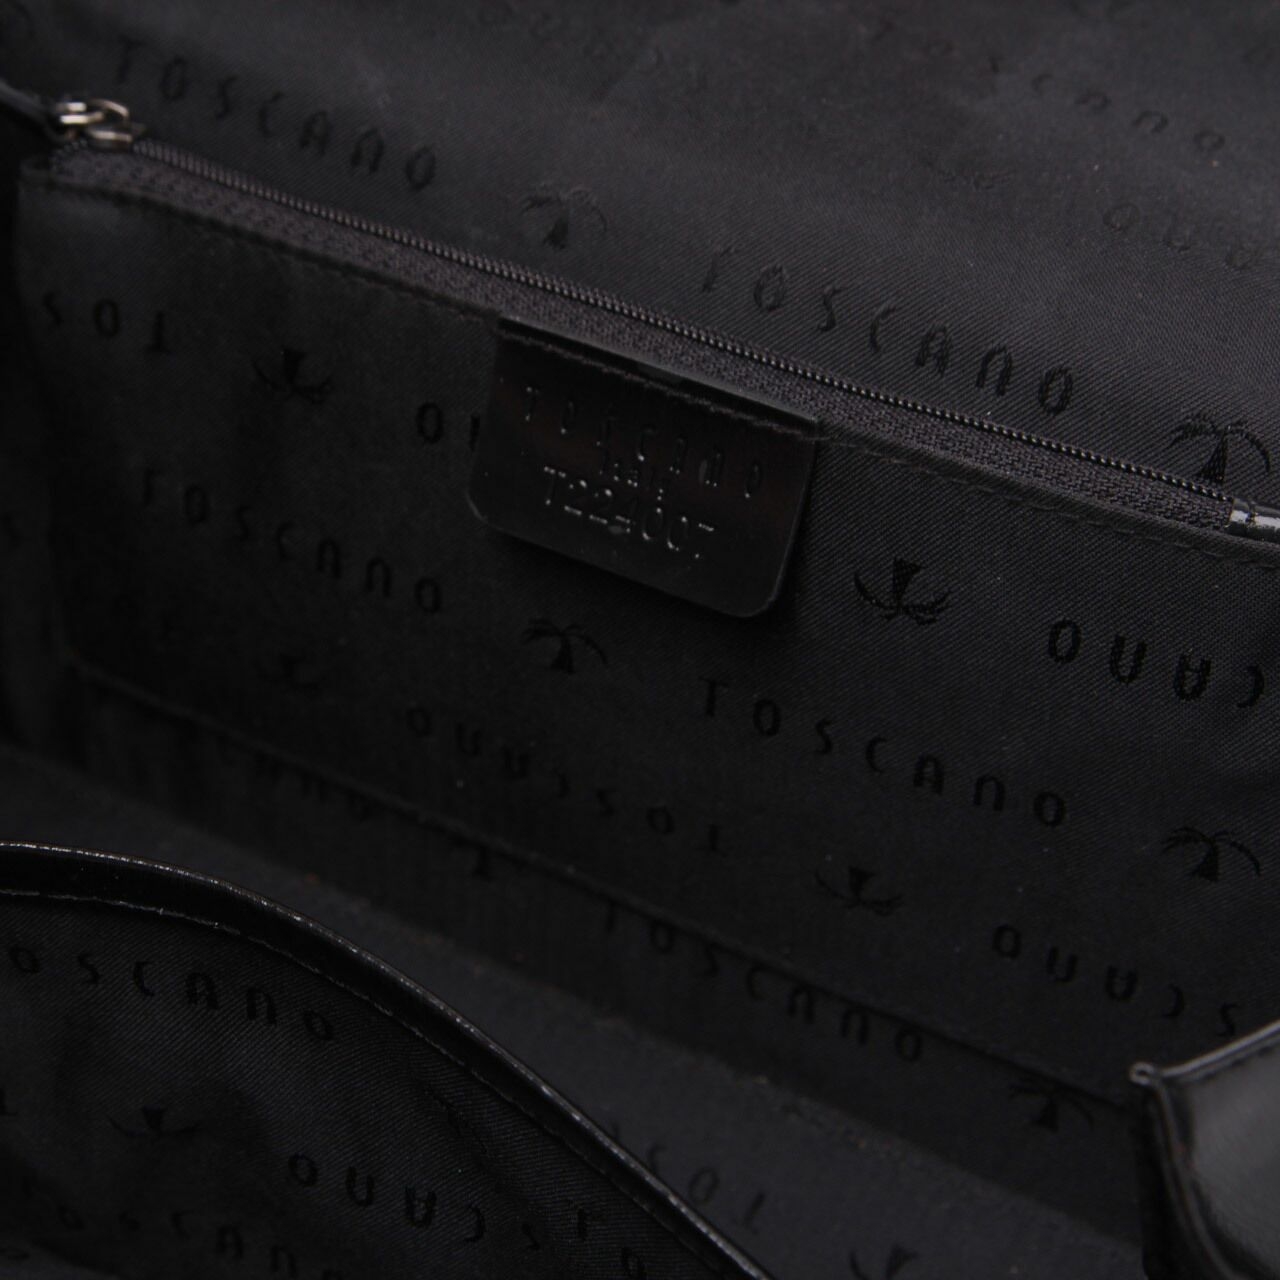 Toscano Black Shoulder Bag